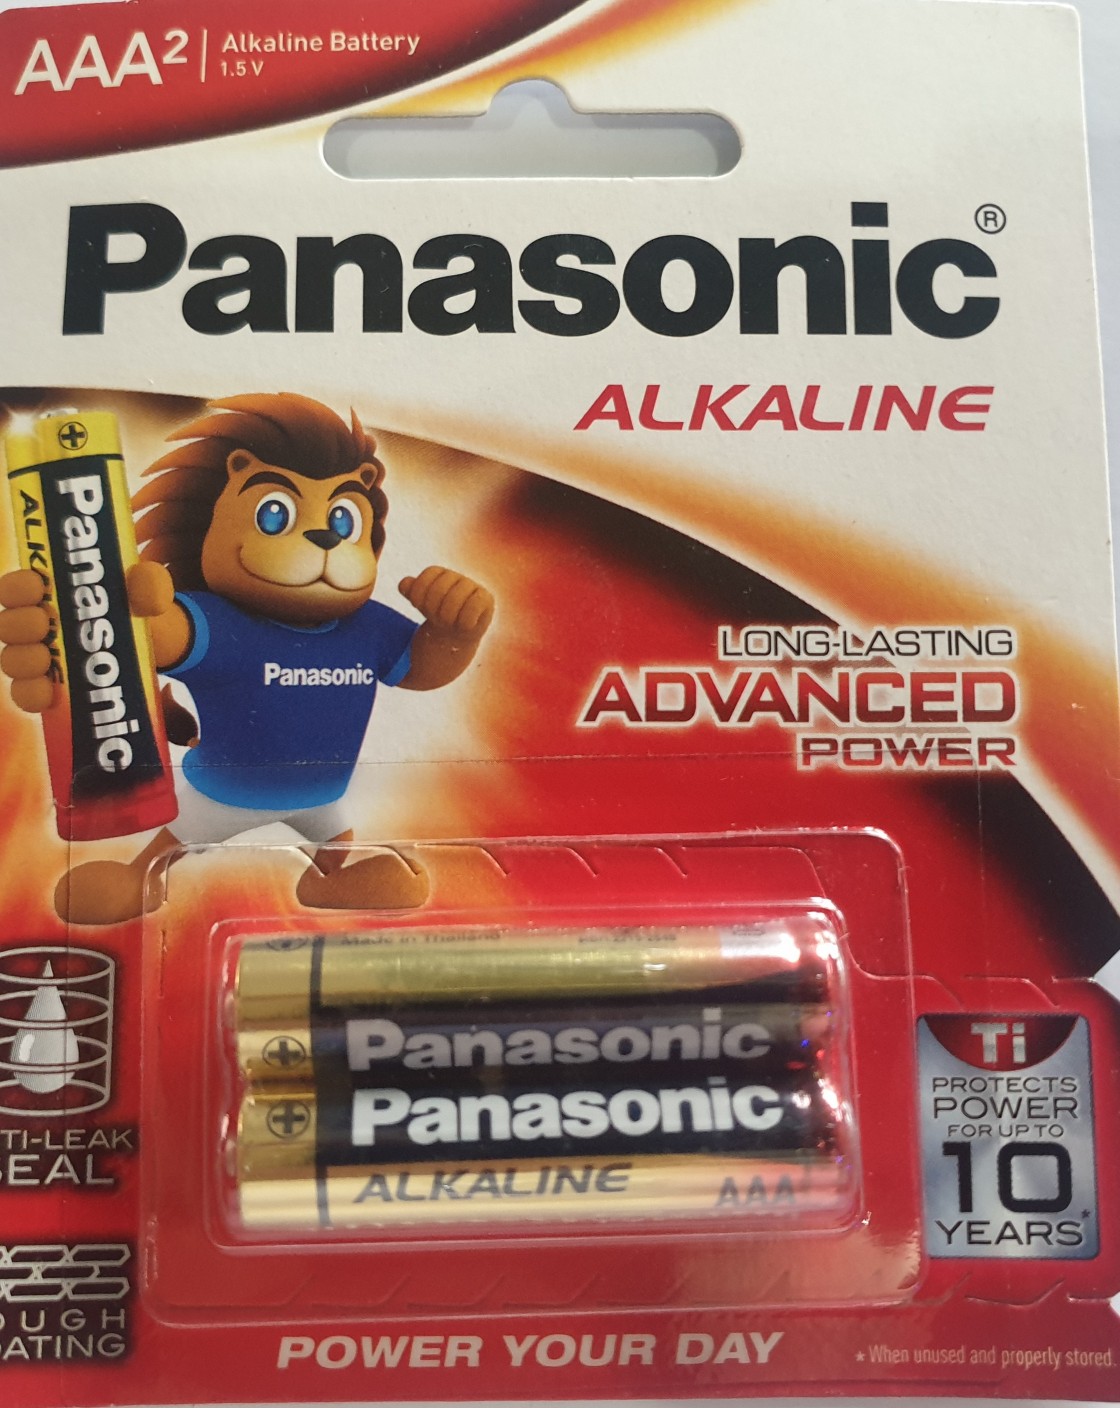 Battery Panasonic Alkaline AAA²